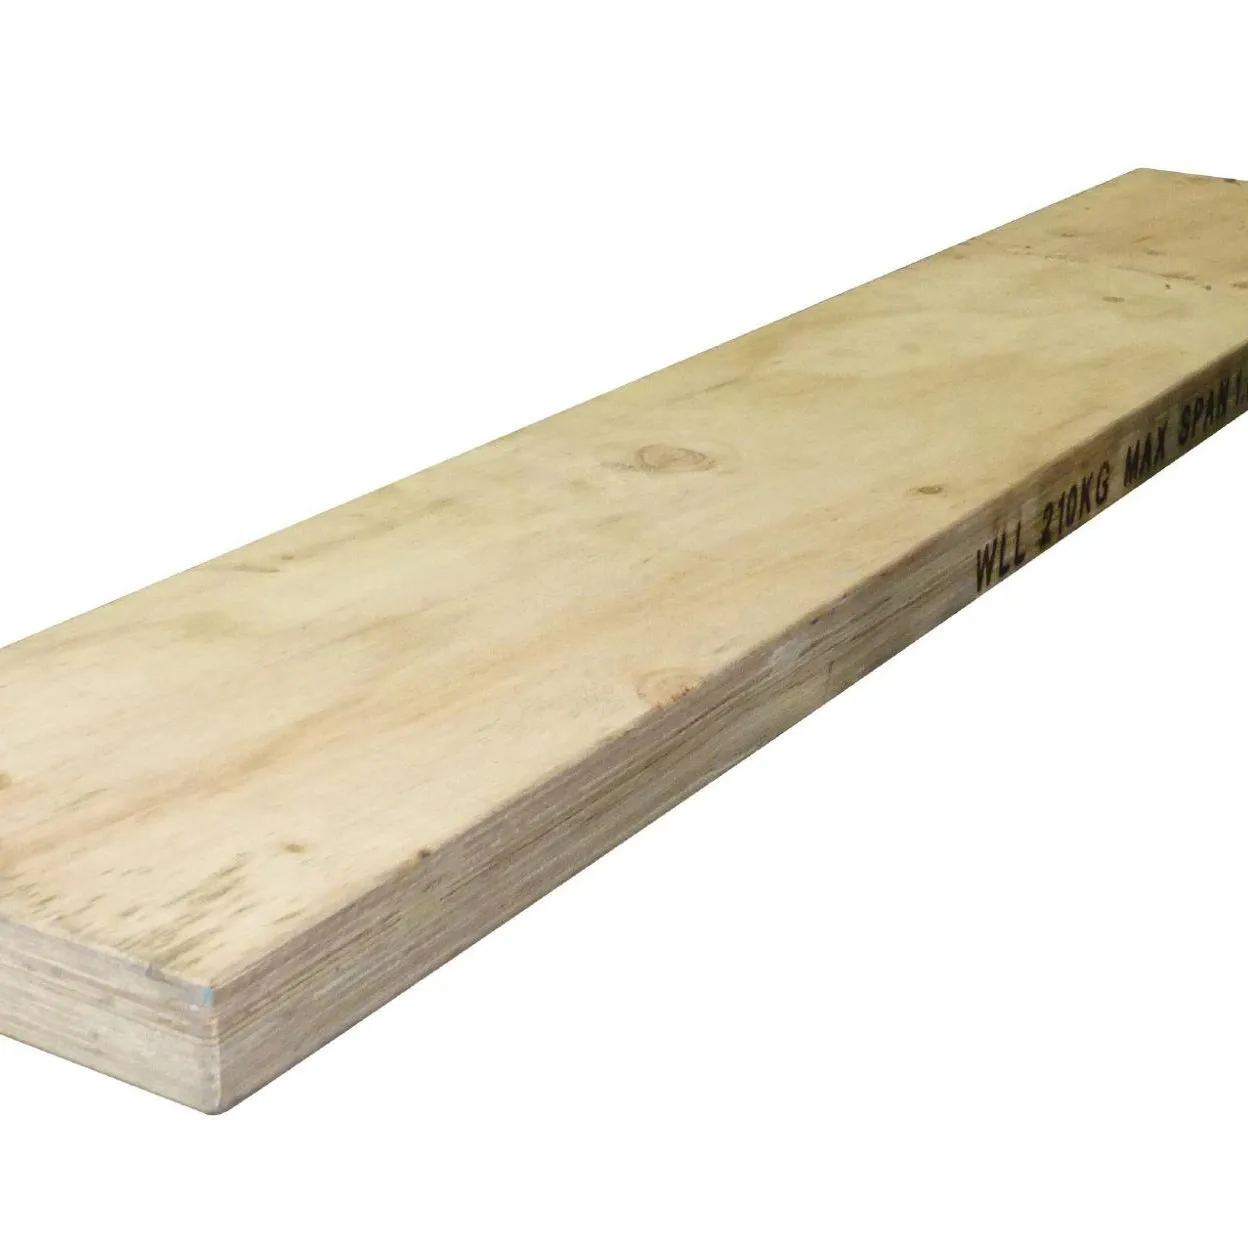 Tavola per ponteggi in legno ADTO OSHA plancia per ponteggi LVL per la costruzione